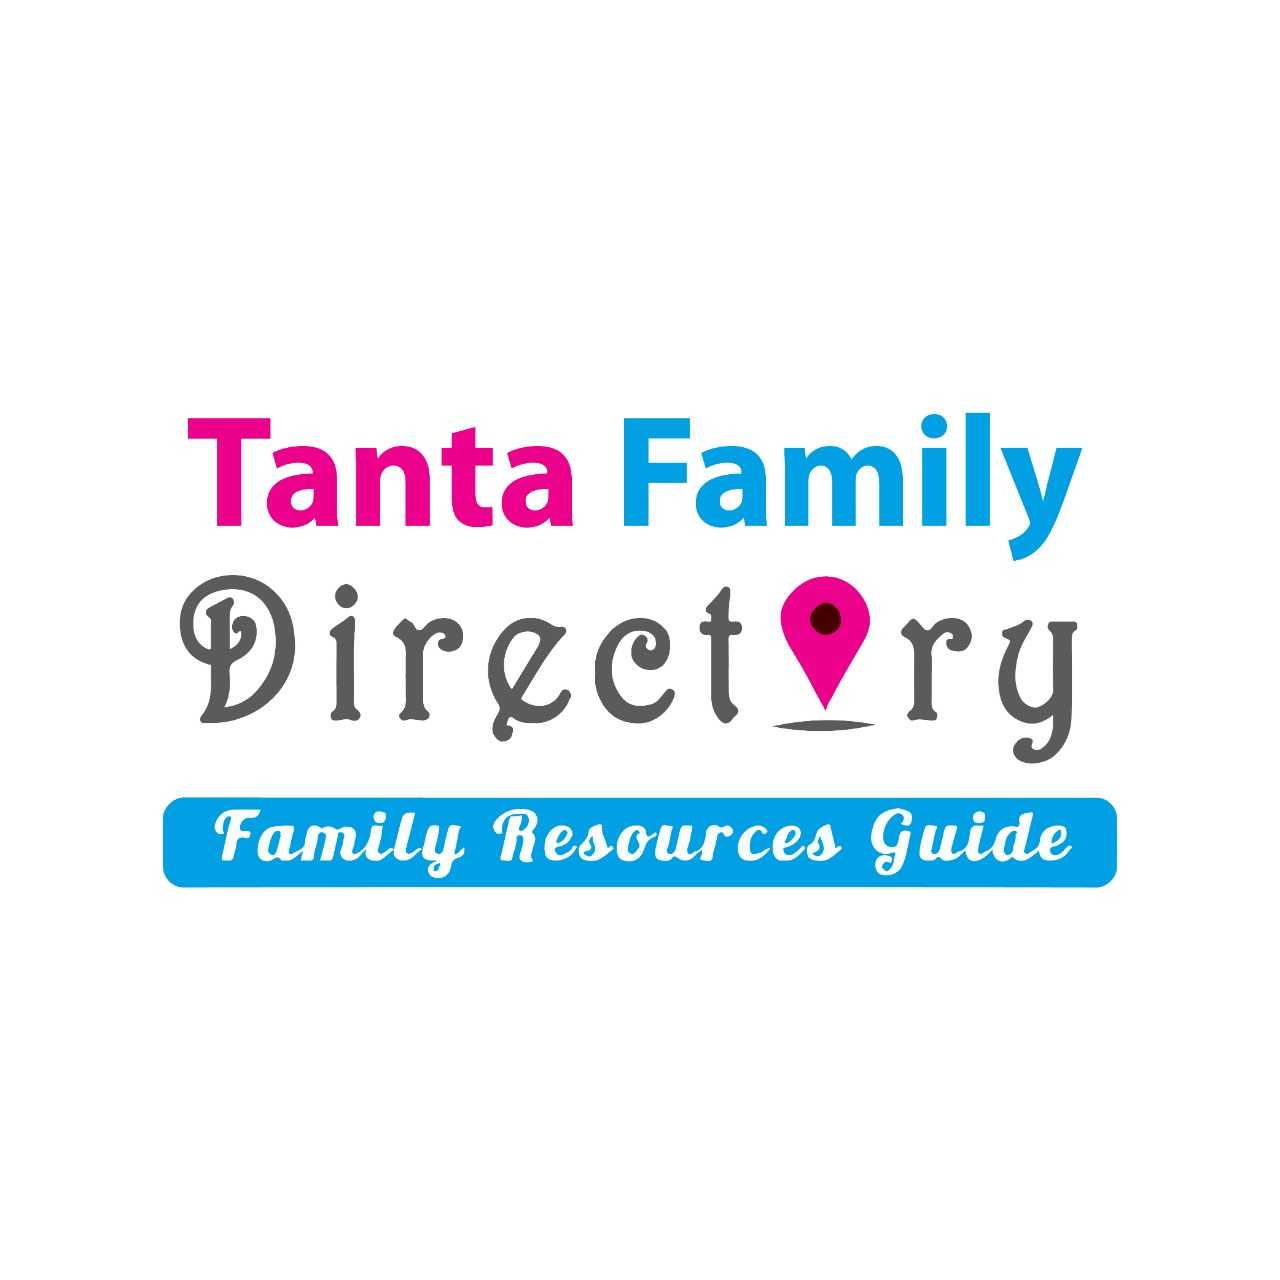 Tanta Family Directory